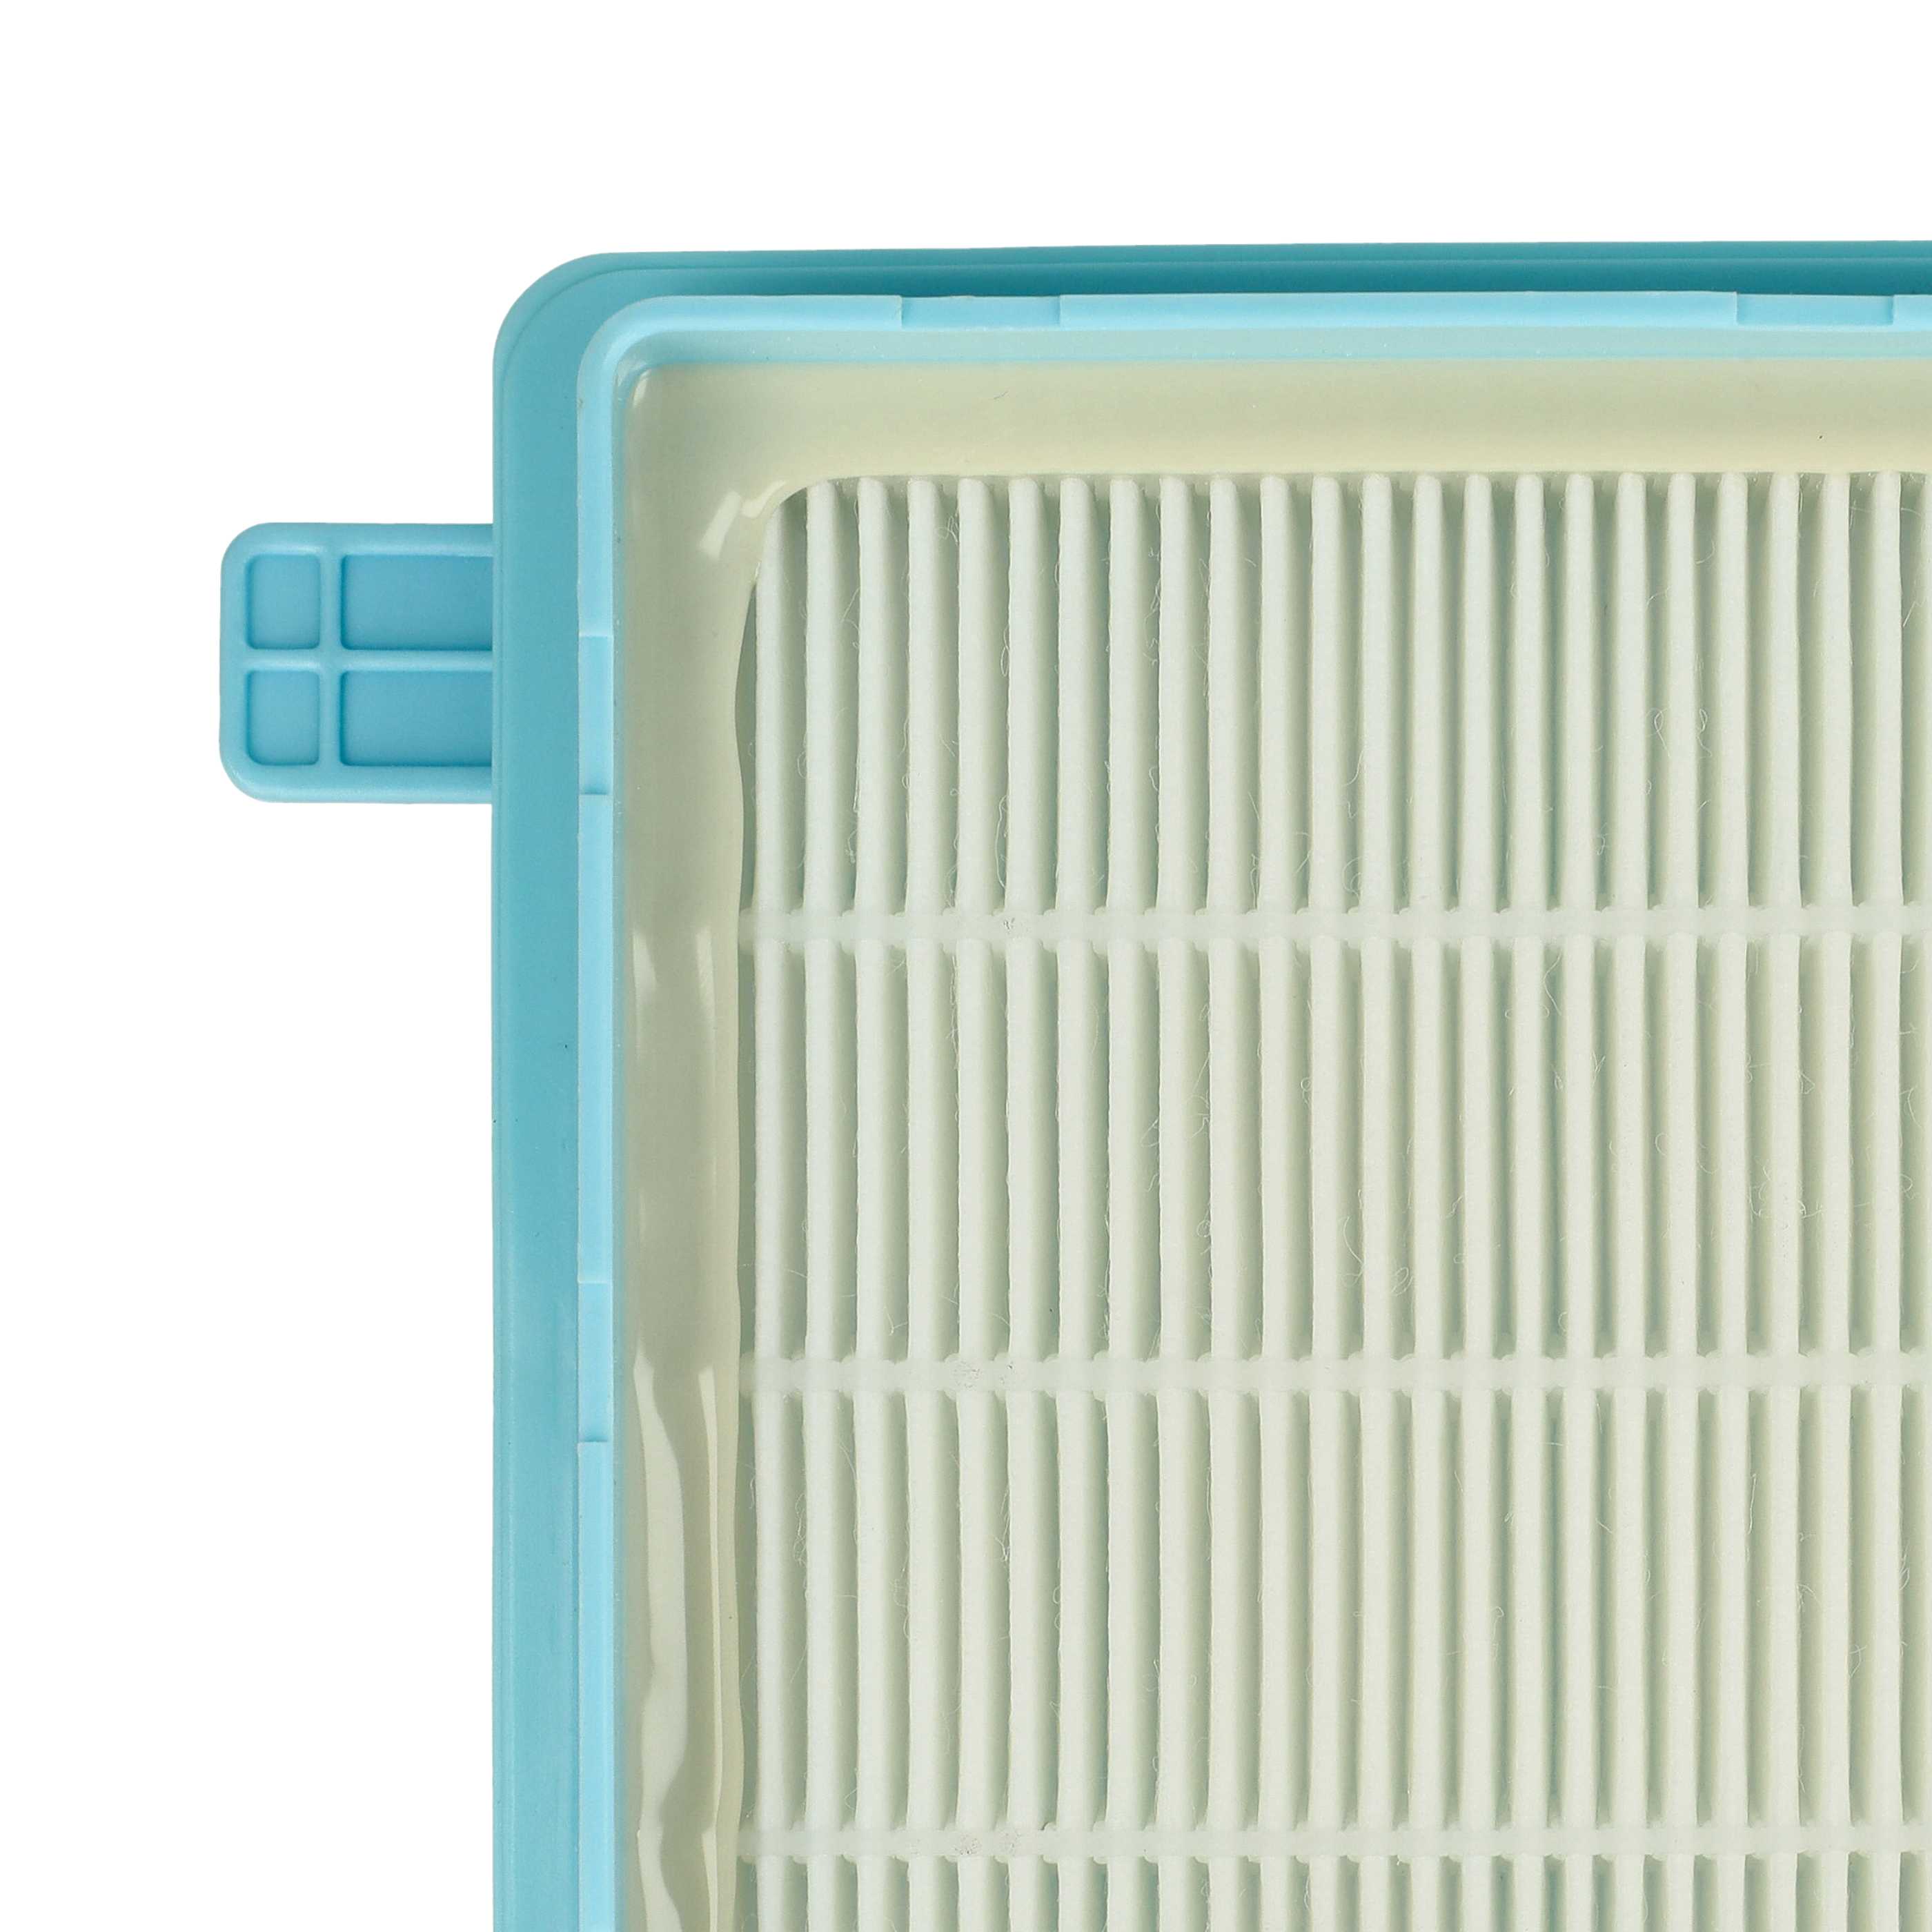 2x Filtro sostituisce Grundig 9178005623 per aspirapolvere - filtro HEPA, bianco / azzurro